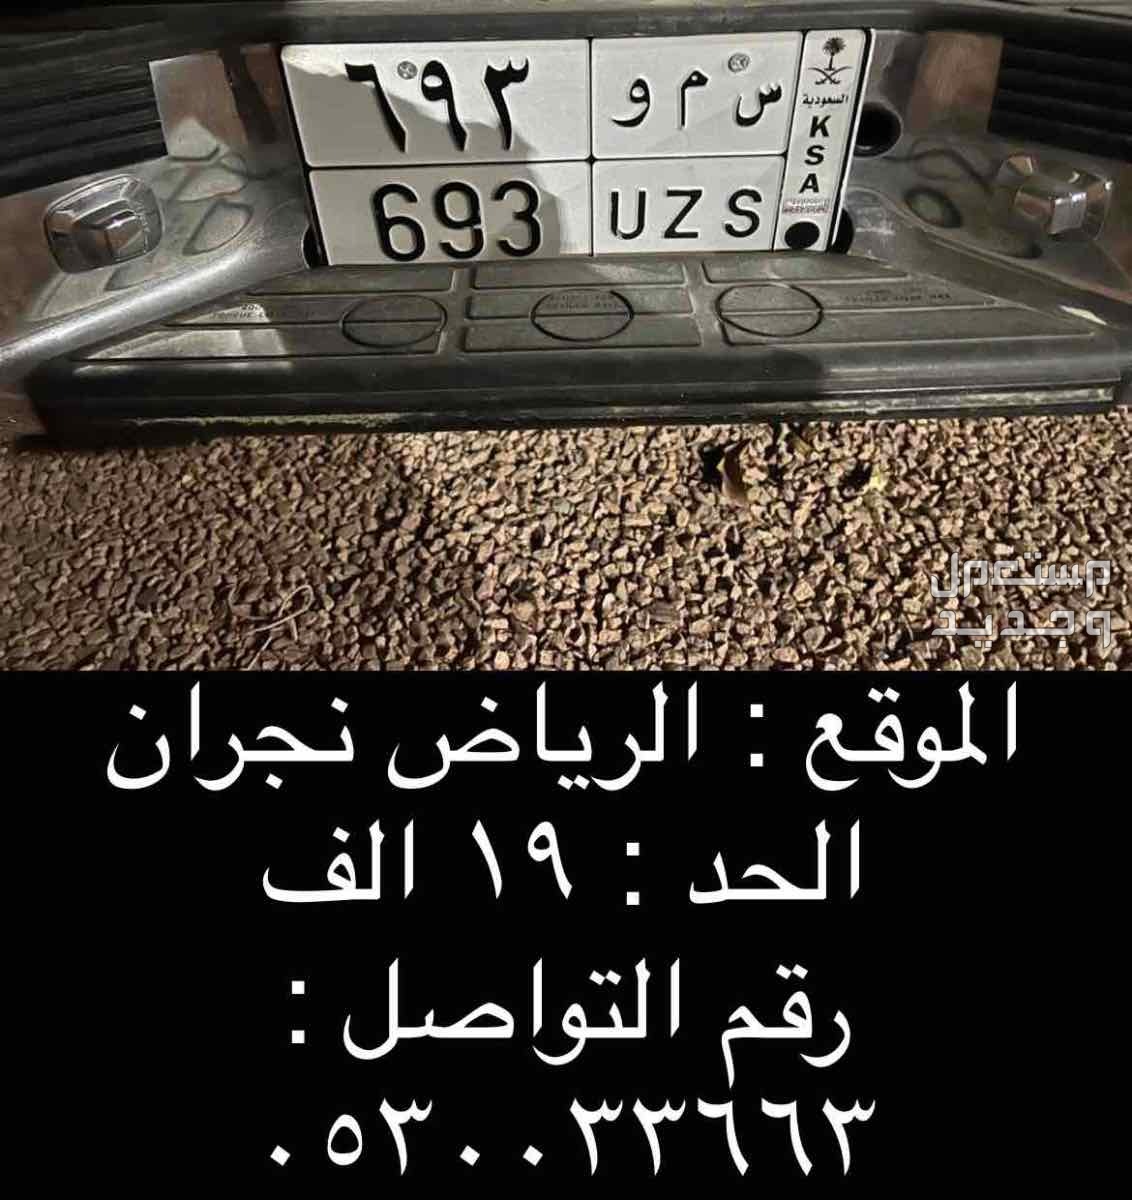 لوحة مميزة س م و - 693 - خصوصي في الرياض بسعر 19 ريال سعودي